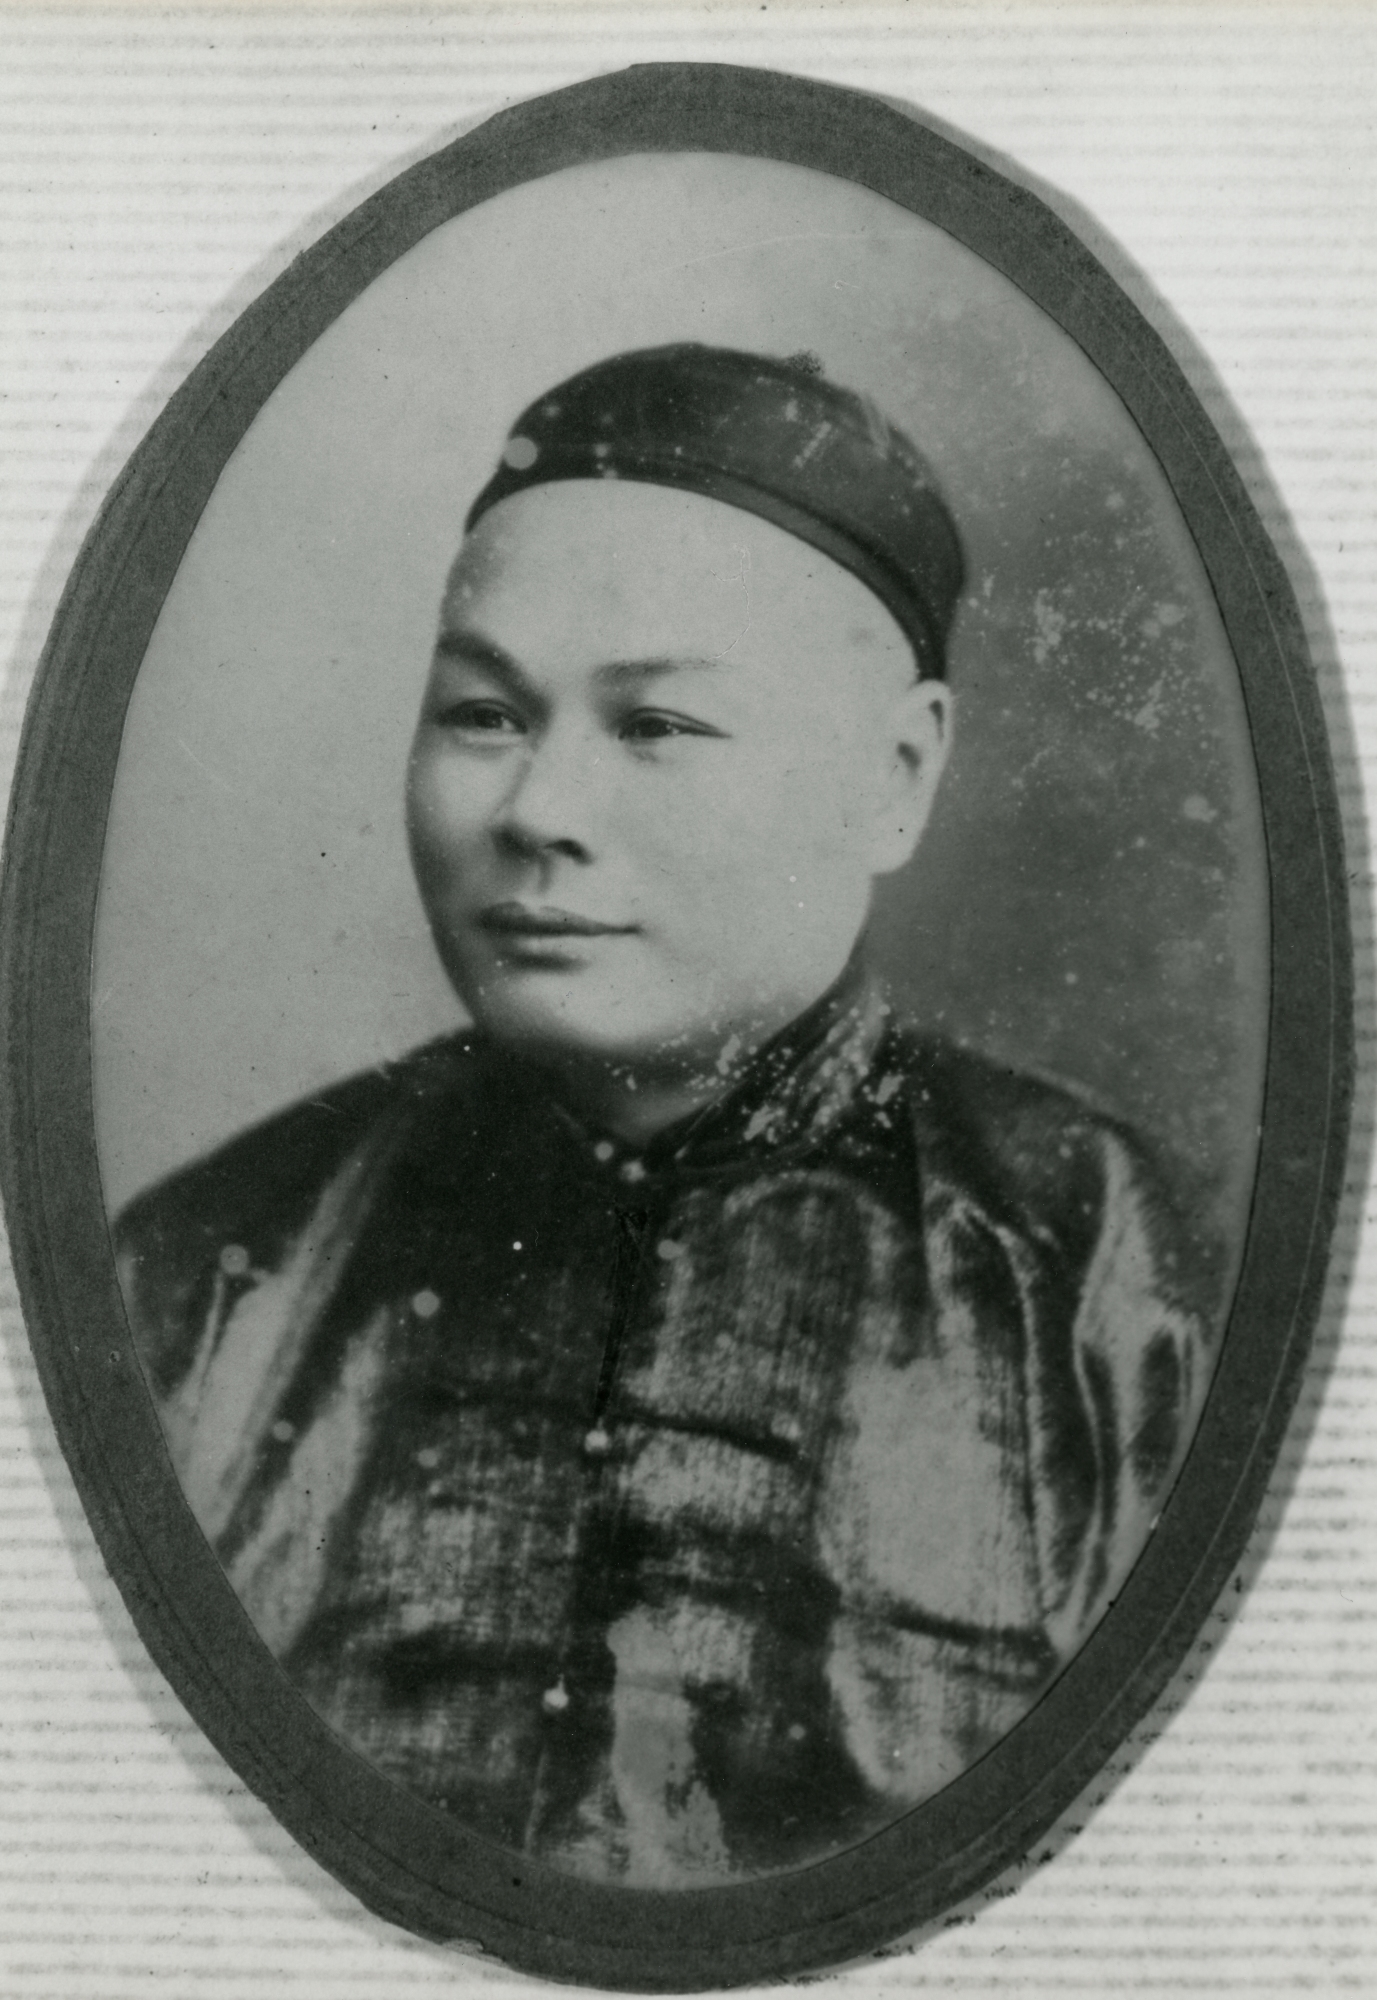 何甘棠（1866-1950）。何甘棠与何东爵士（1862-1956）及何福（1863-1926）为同母异父的兄弟，与孙中山先生同年出生，同样入读过中央书院，其后曾任怡和洋行买办等职。